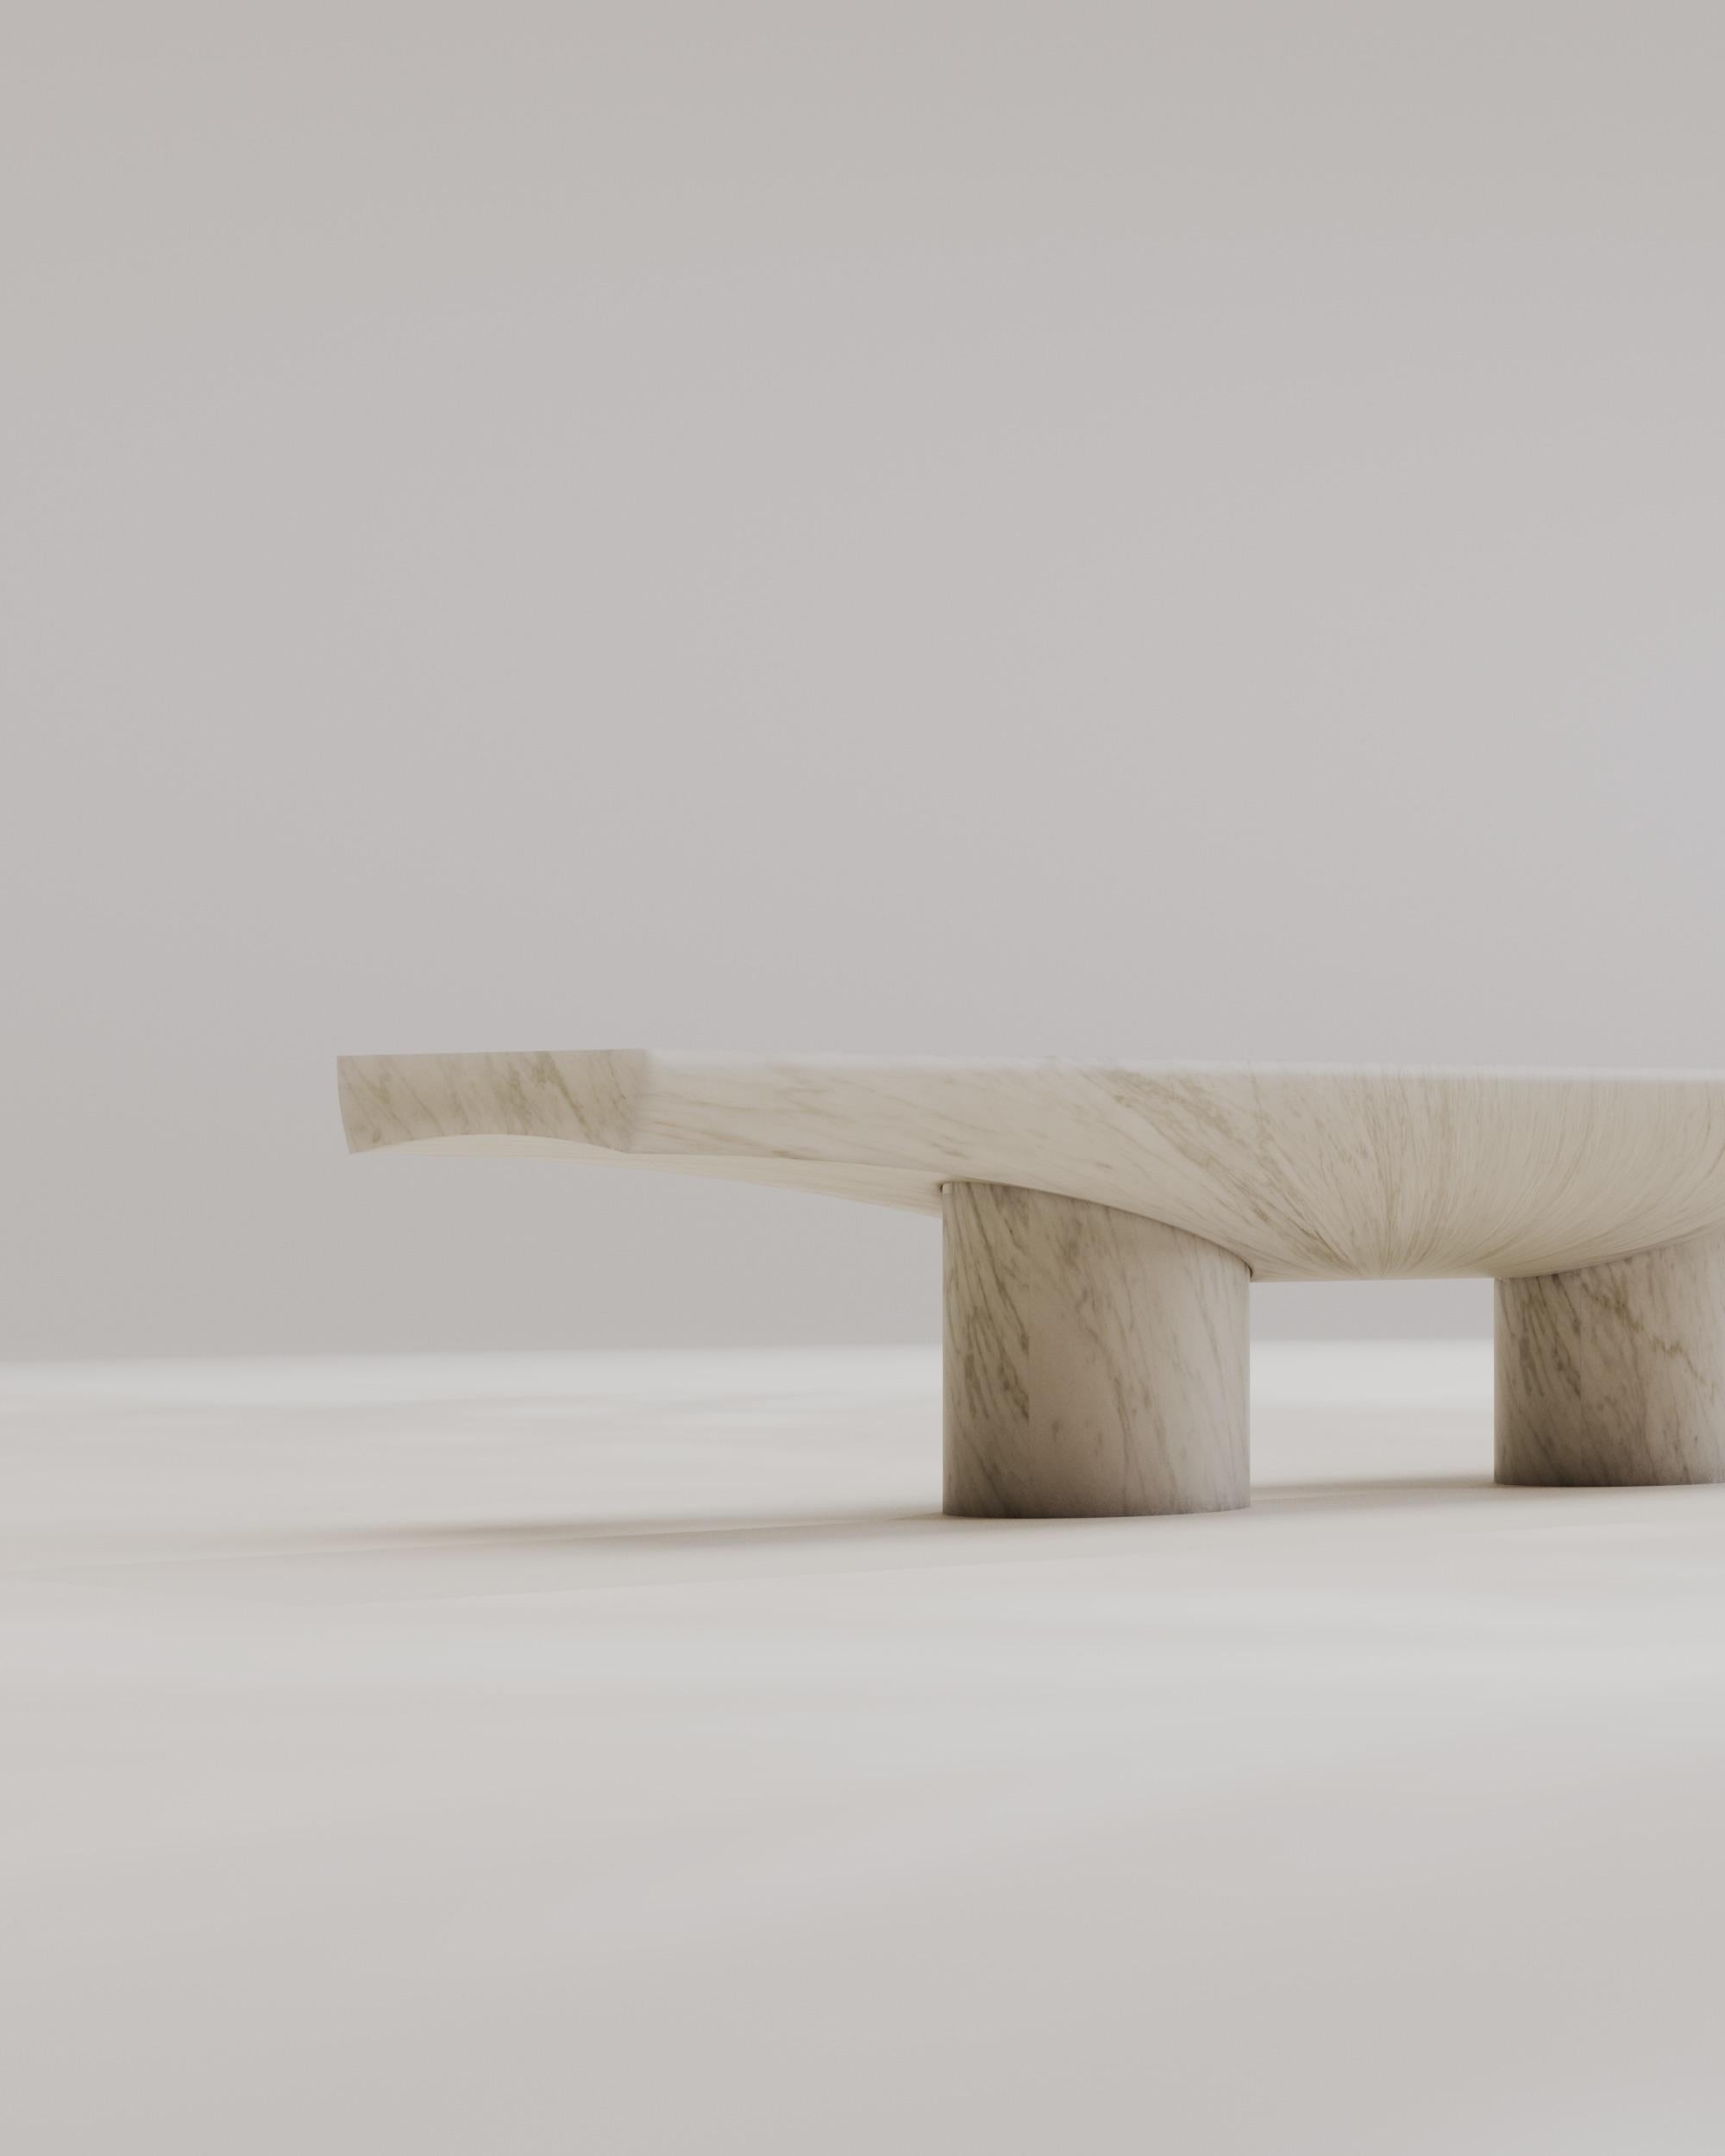 Italian Contemporary Solid White Marble Abraccio Bench 140 by Studio Narra For Sale